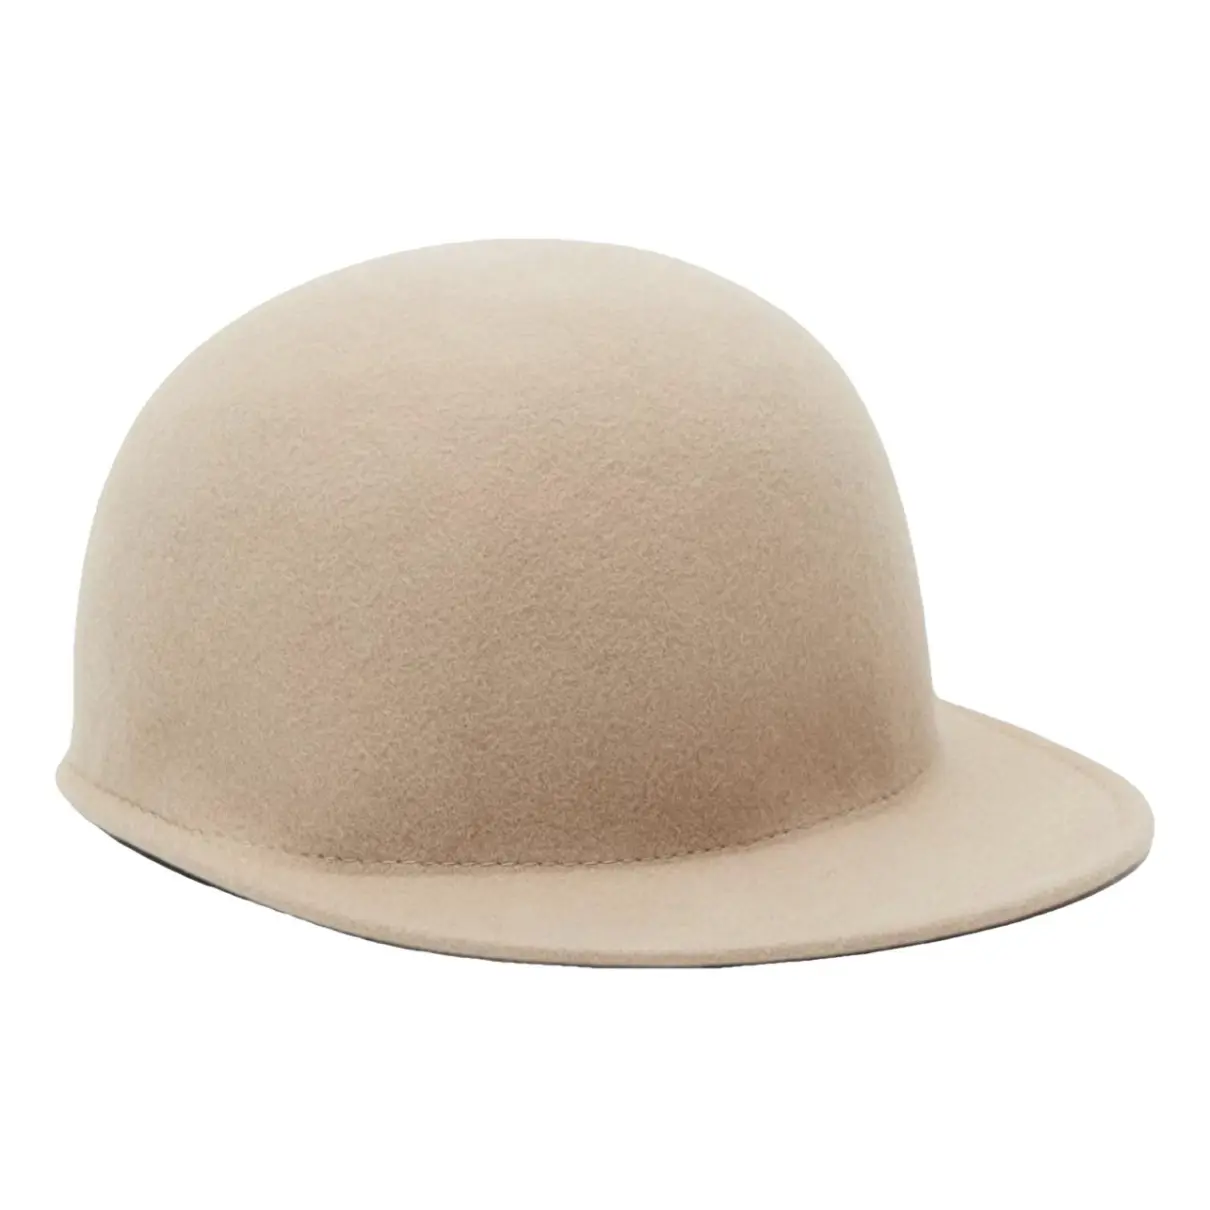 Wool cap